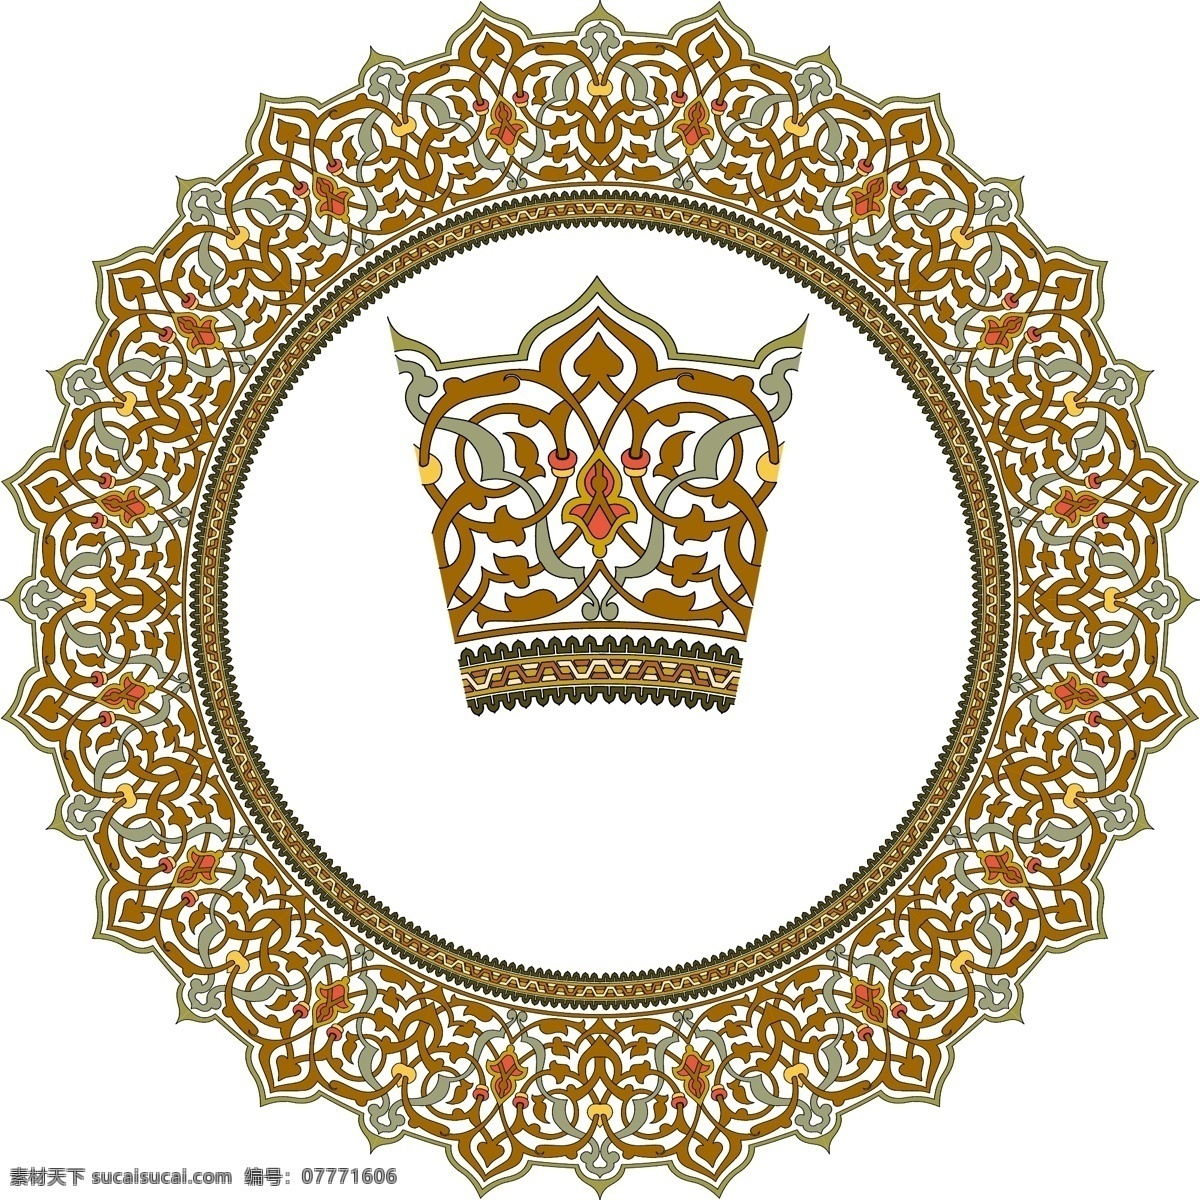 欧式 皇冠 花纹 矢量图 其他矢量图